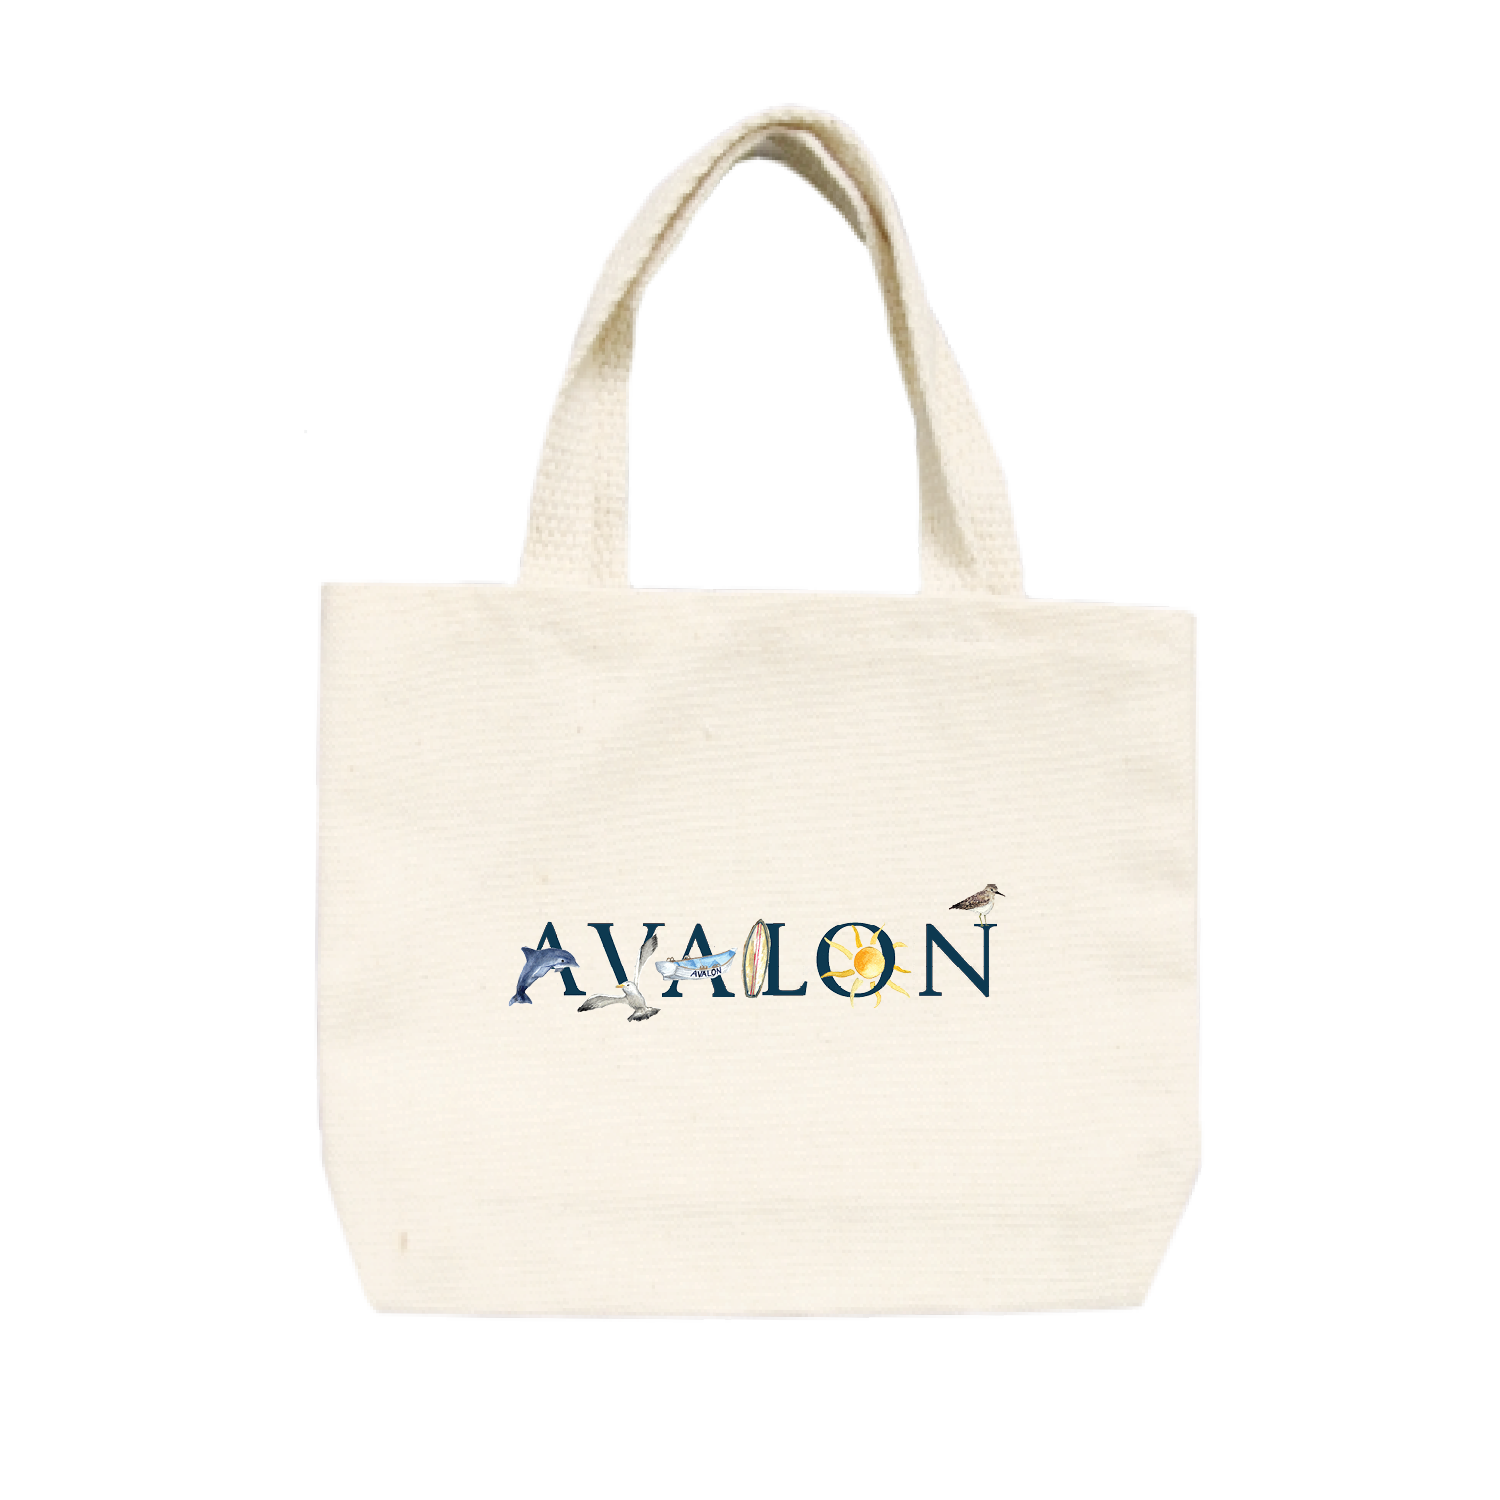 Avalon small tote